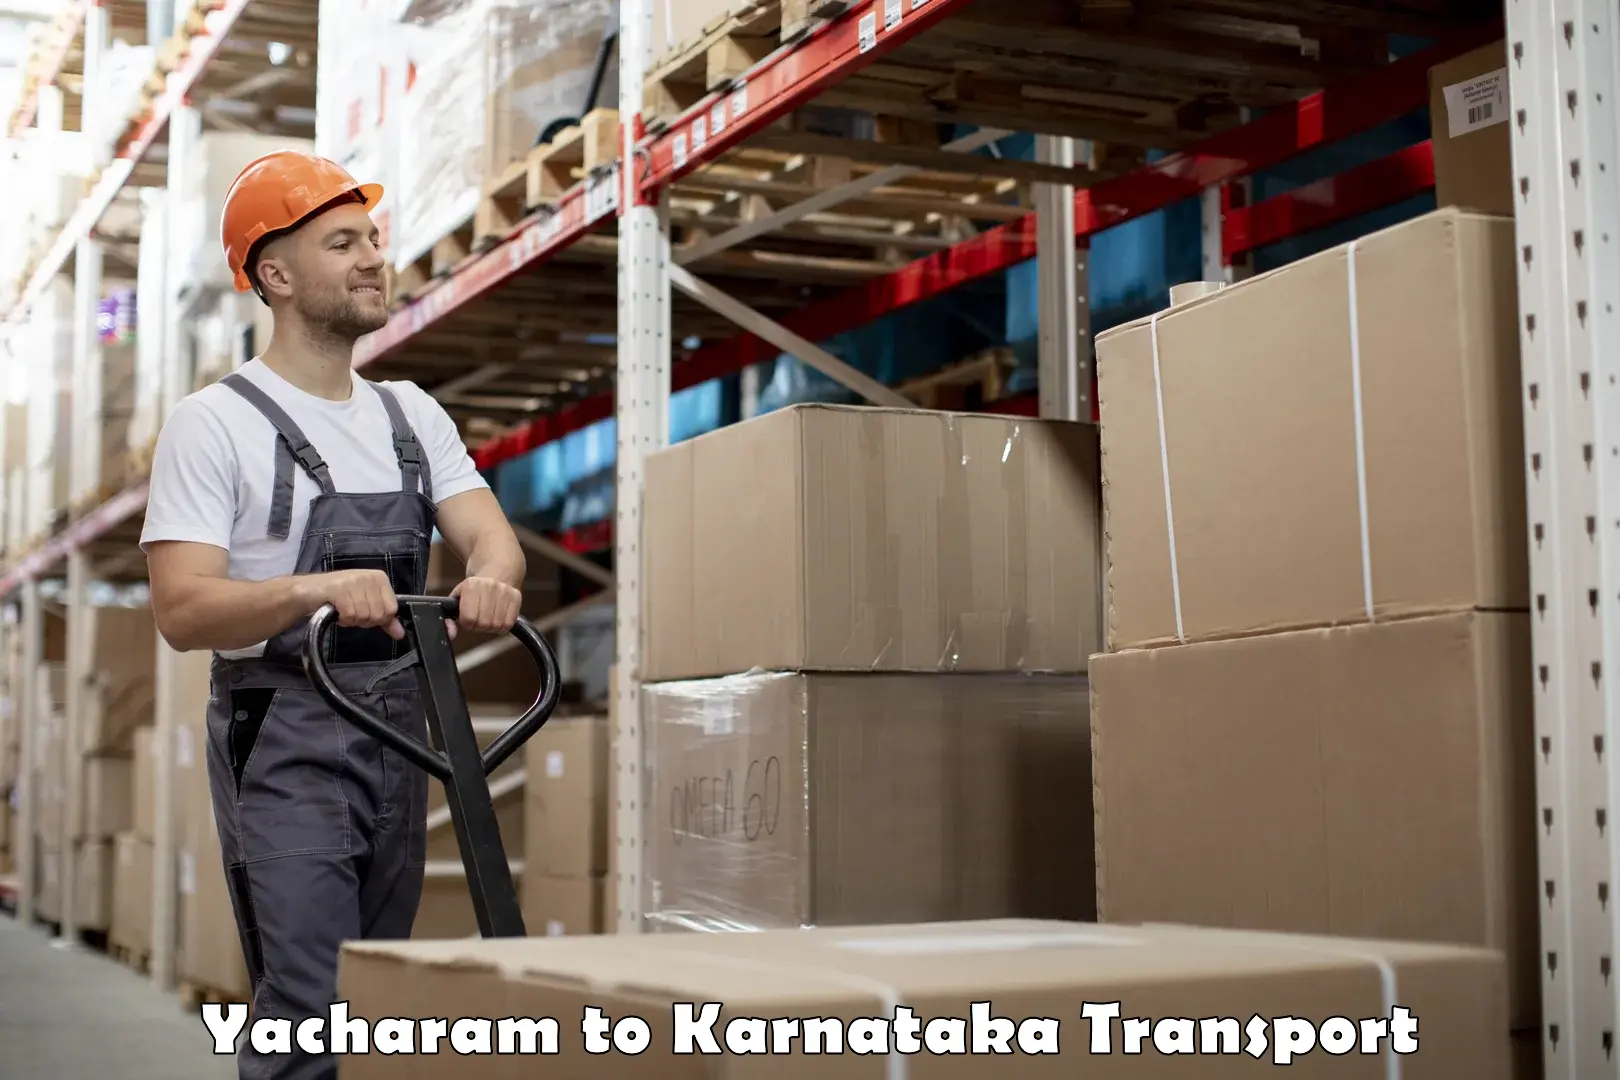 Truck transport companies in India Yacharam to Madikeri